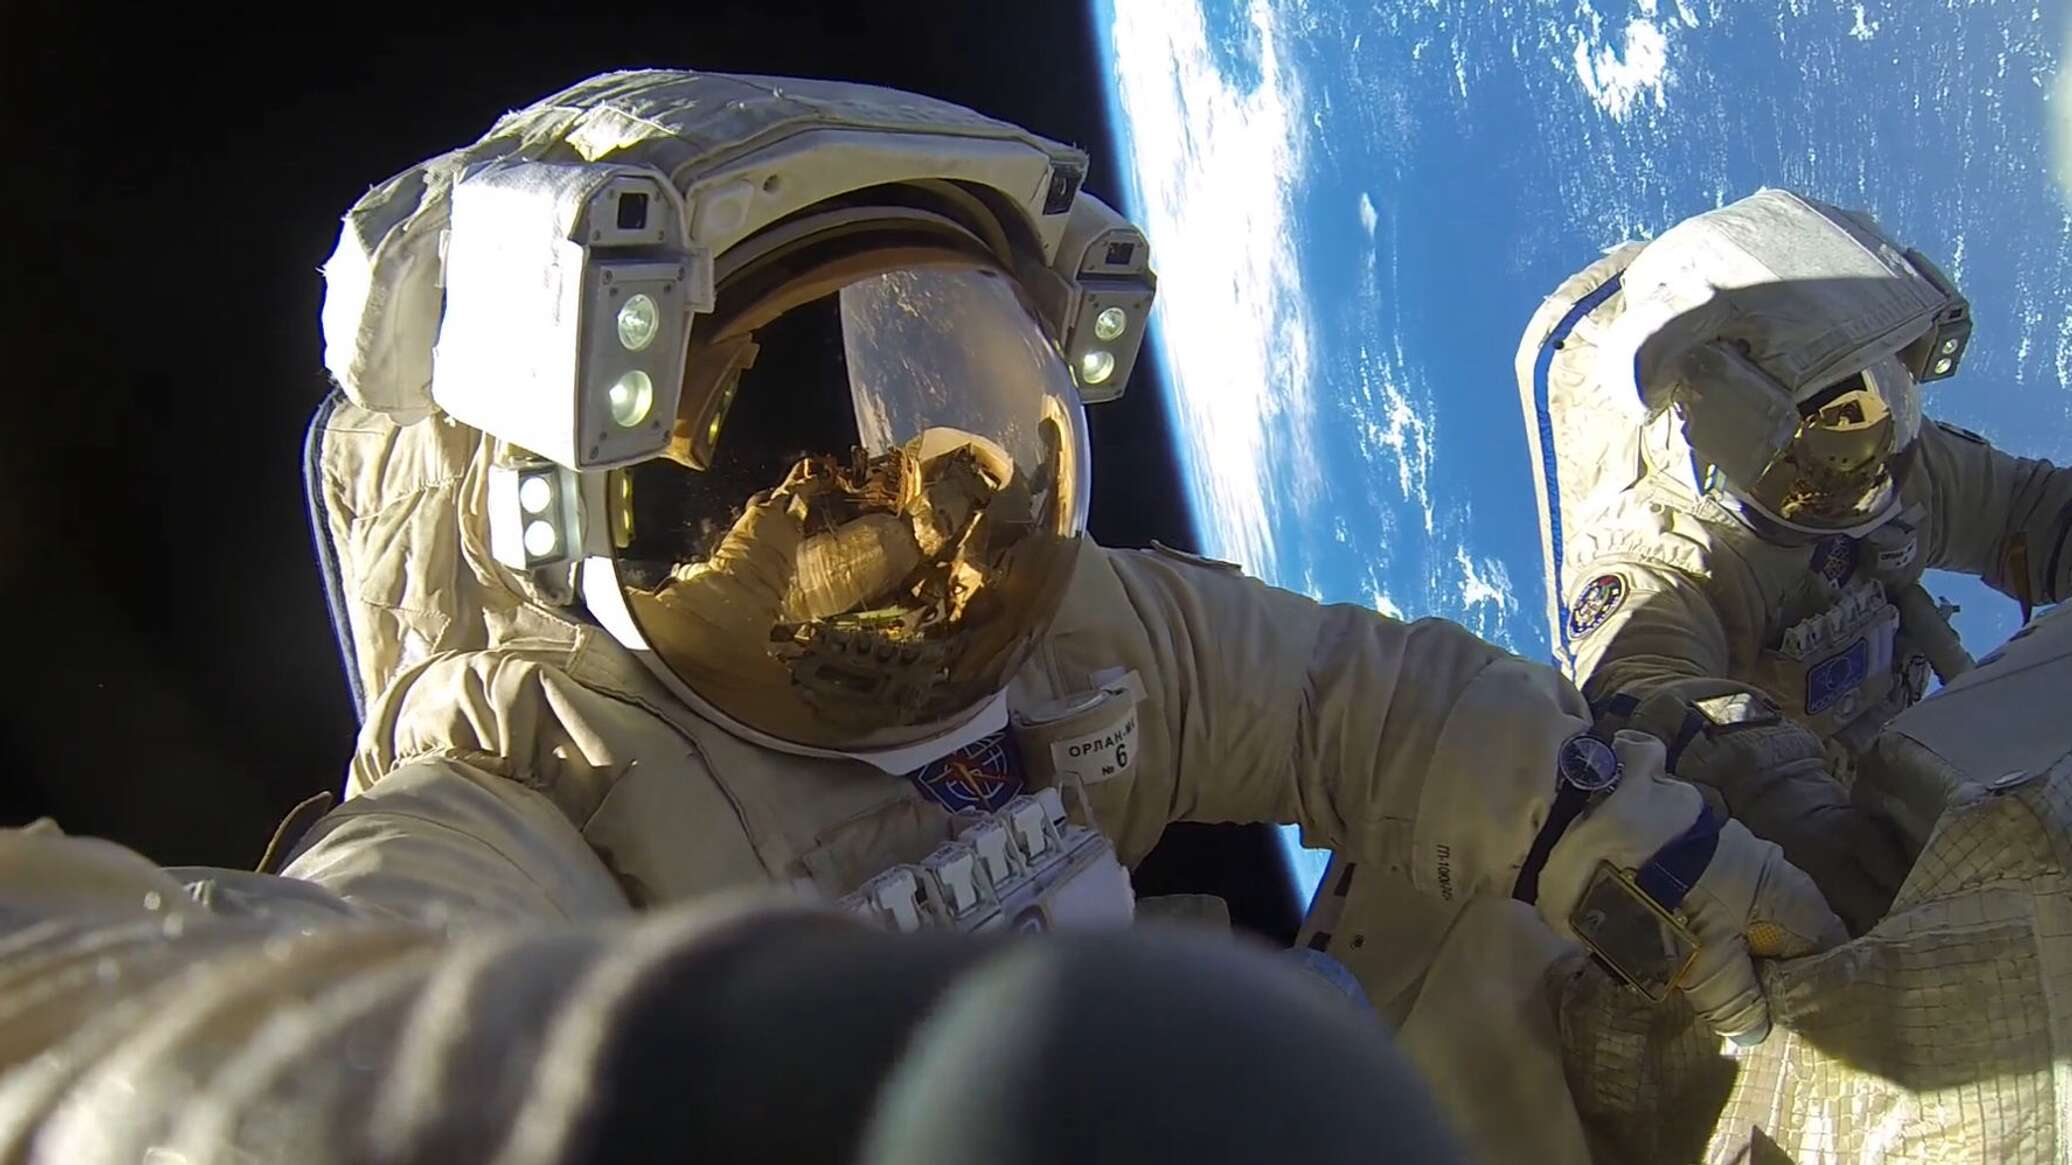 "روسكوسموس" و"ناسا" توسعان برنامج الرحلات إلى محطة الفضاء الدولية